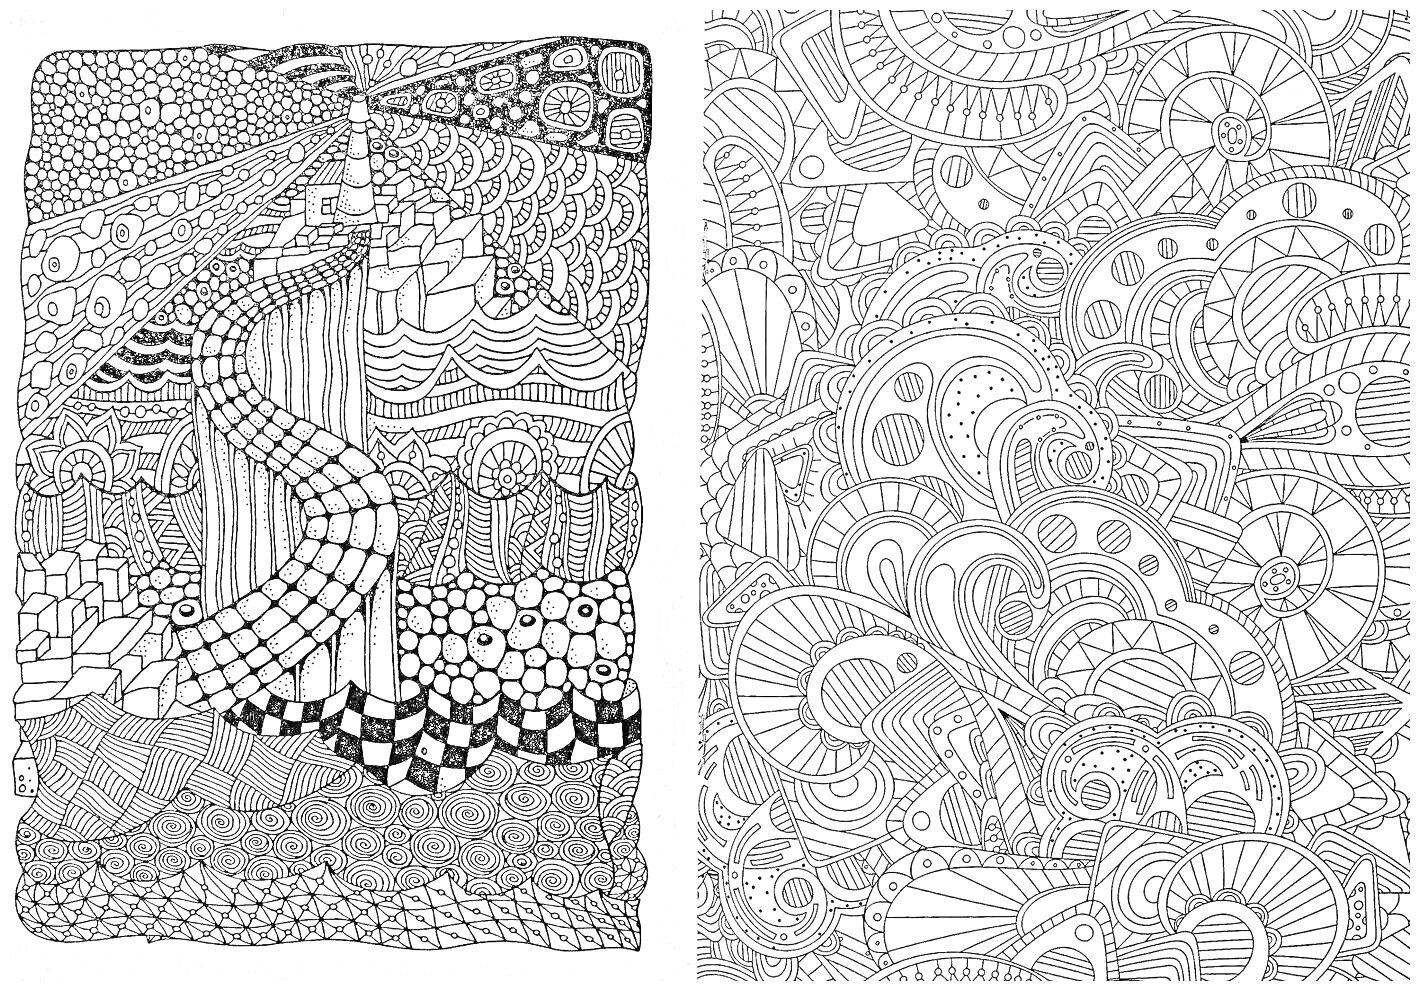 Раскраска Лабиринт антистресс с причудливыми узорами, абстрактными фигурами и волнообразными линиями